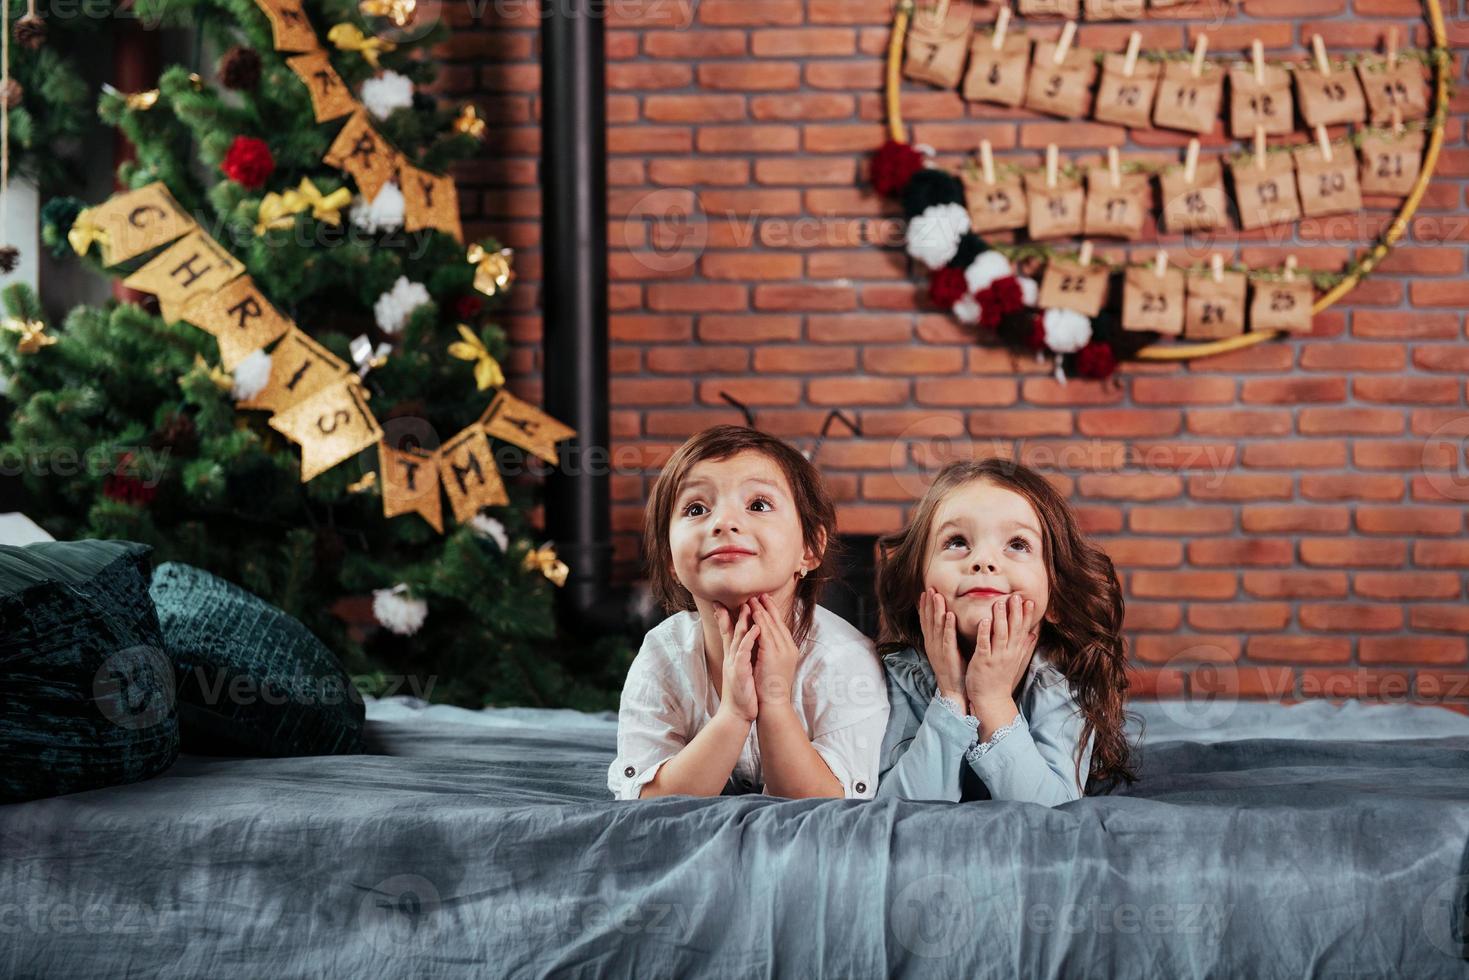 en previsión de regalos. lo que son dos alegres niñas acostadas en la cama con adornos de año nuevo y árbol navideño foto